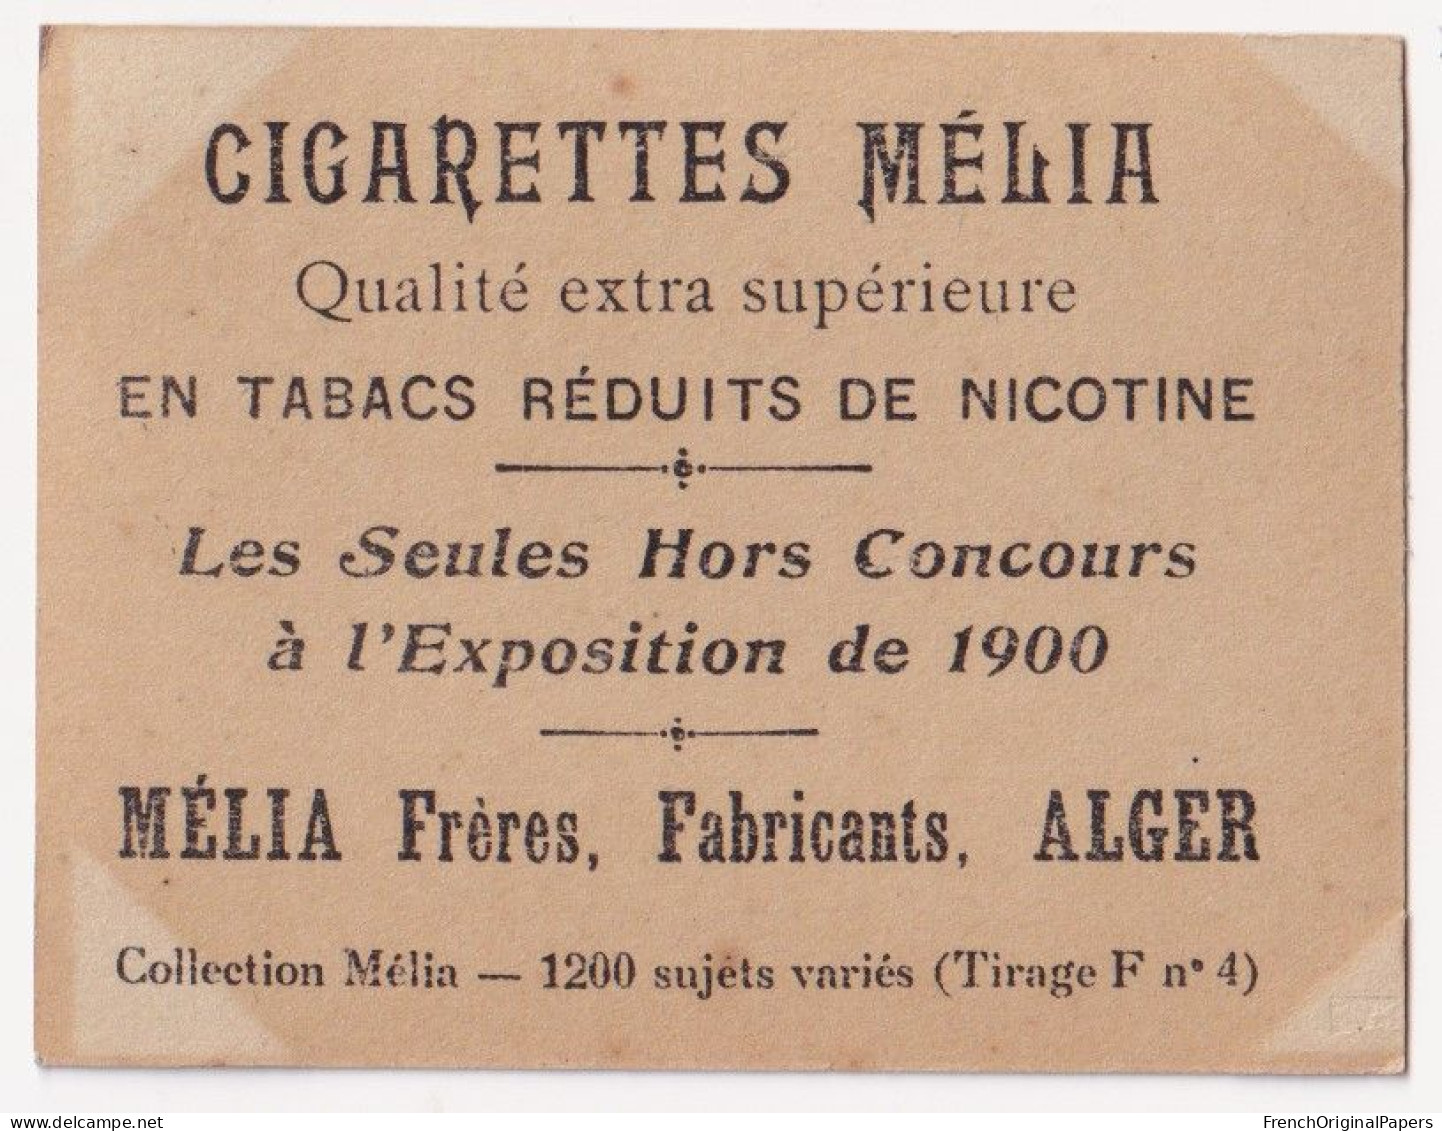 Céaly - Cigarettes Mélia 1910 Photo Femme Sexy Lady Pin-up Woman Nue Vintage Alger Artiste Cabaret érotique A62-12 - Autres Marques